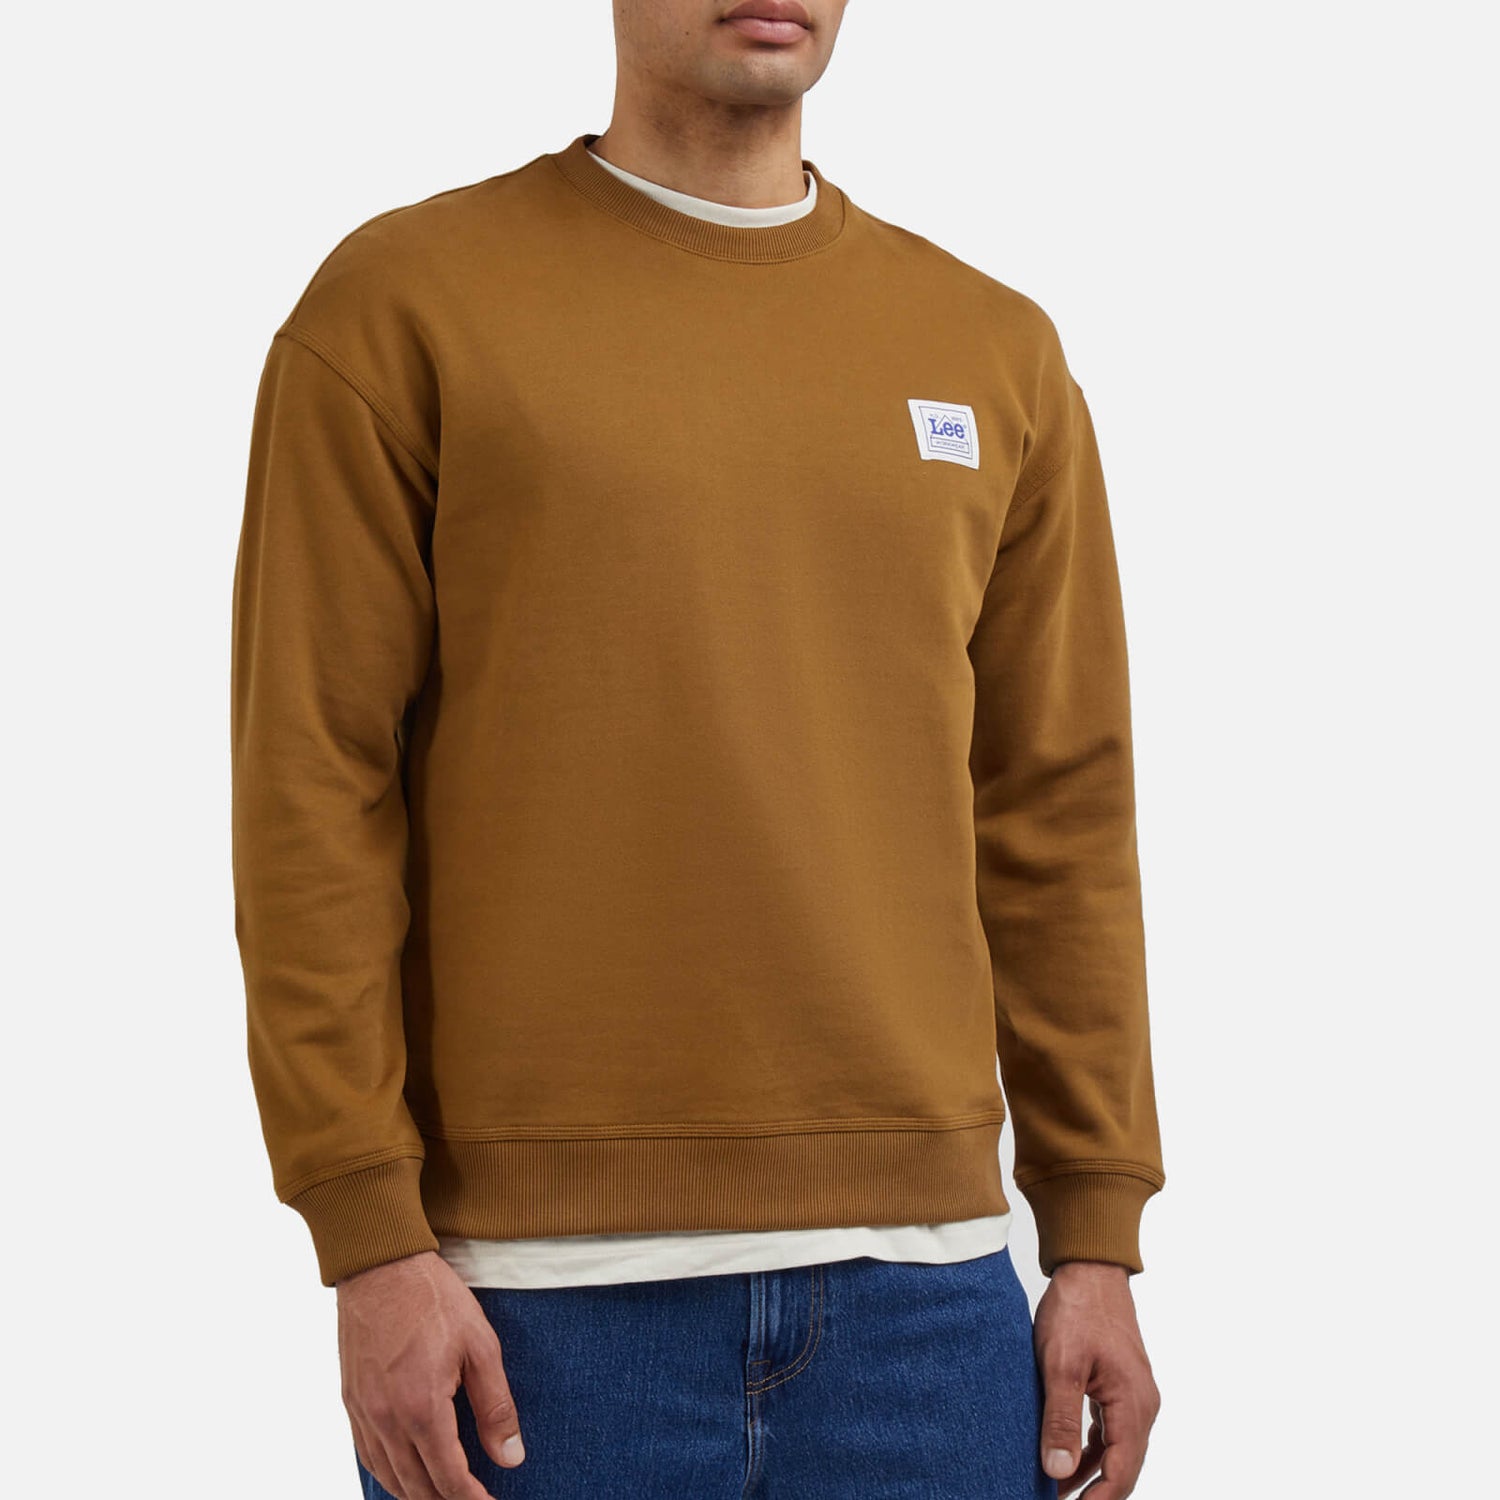 Lee Workwear Jersey Sweatshirt - S